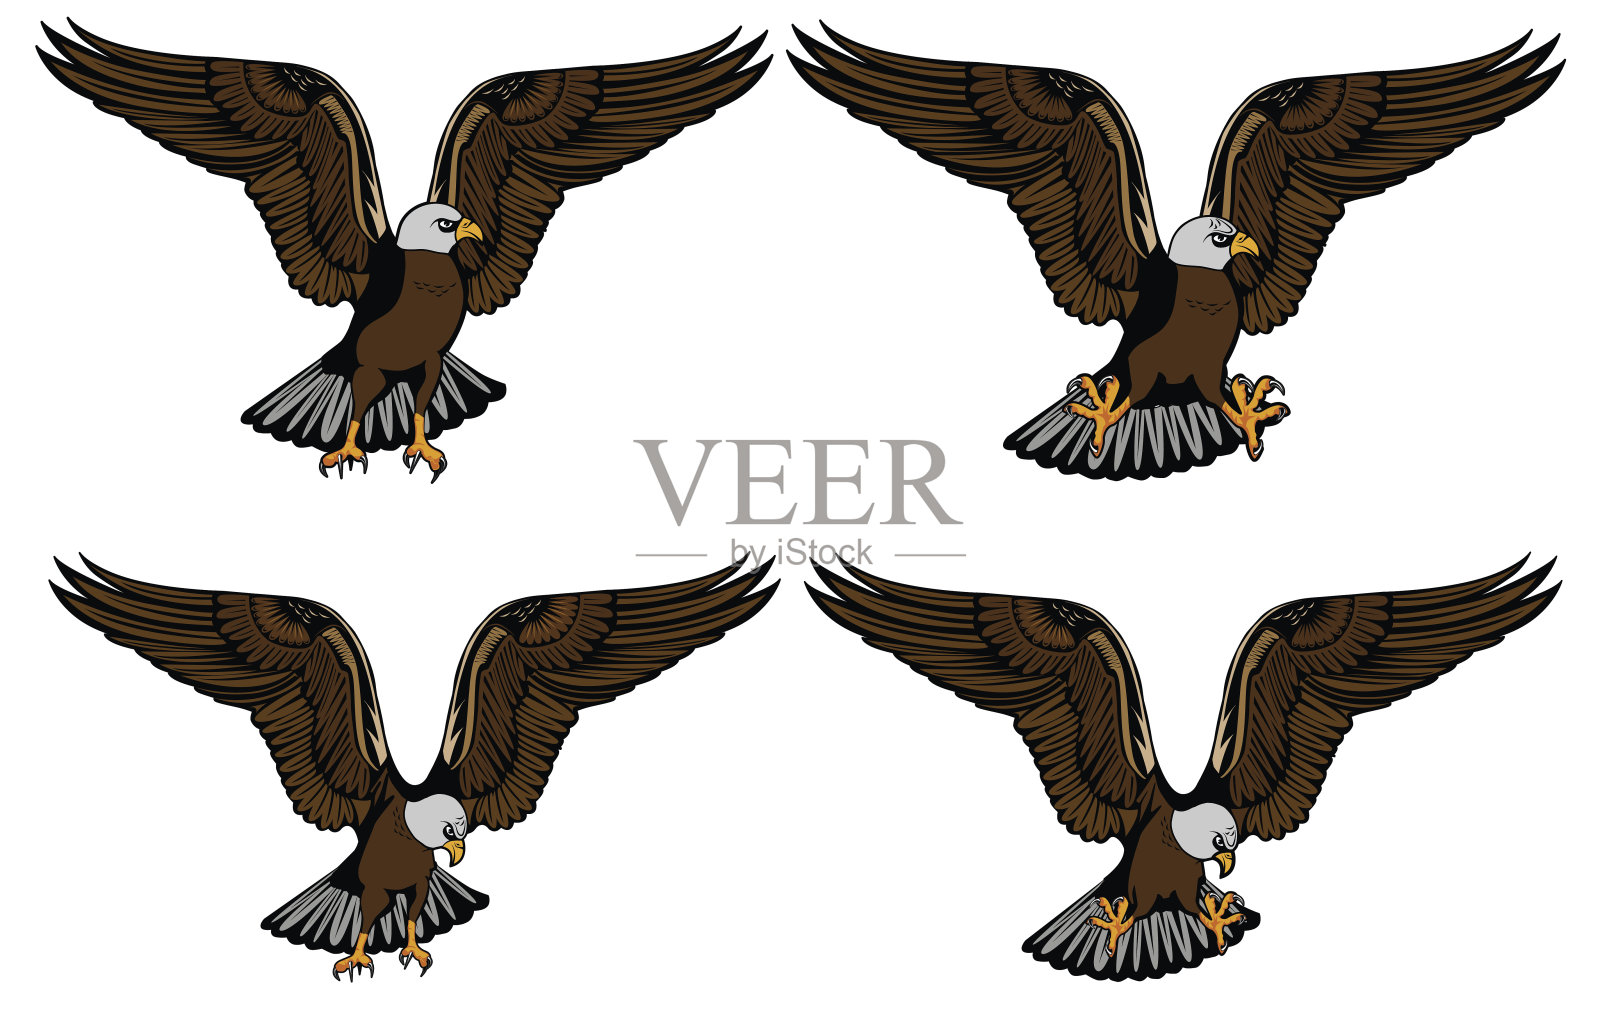 您的打印设计和互联网上的鹰的爪子和头的不同安排的图像。矢量插图。设计元素图片